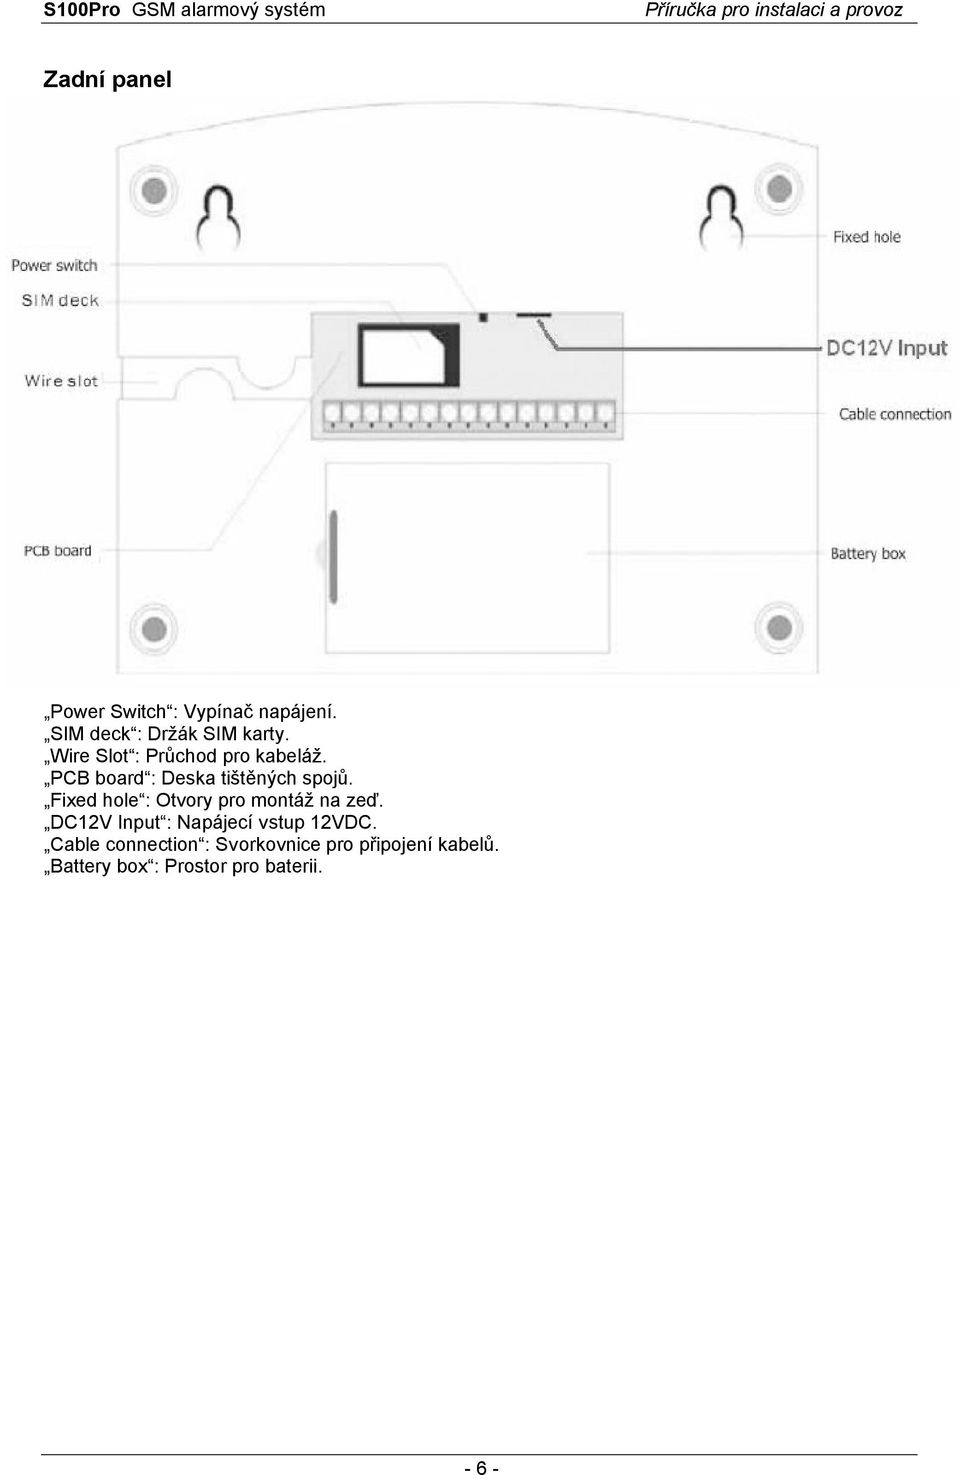 Fixed hole : Otvory pro montáž na zeď. DC12V Input : Napájecí vstup 12VDC.